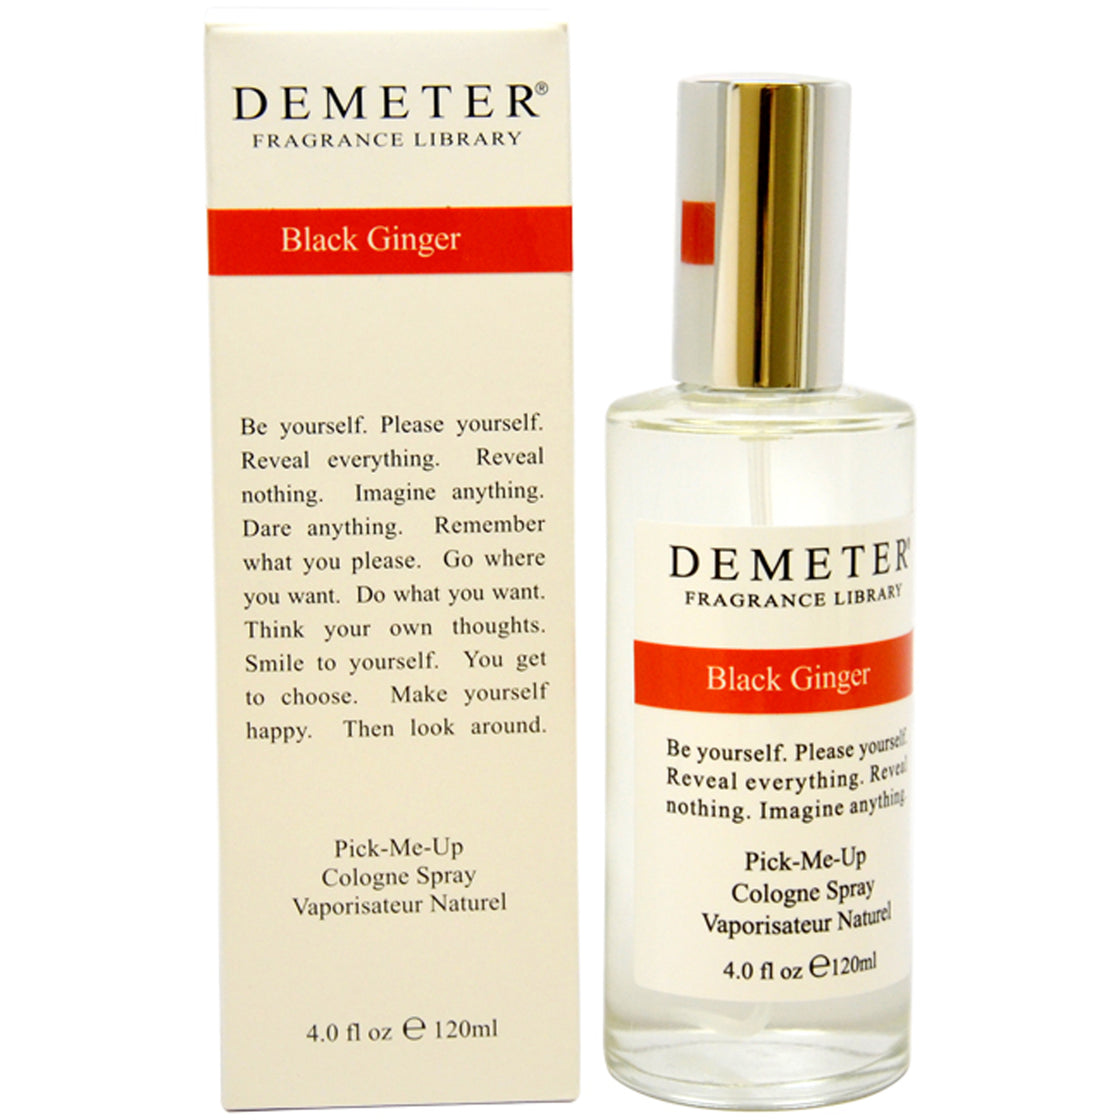 Black Ginger by Demeter for Women - 4 oz Cologne Spray